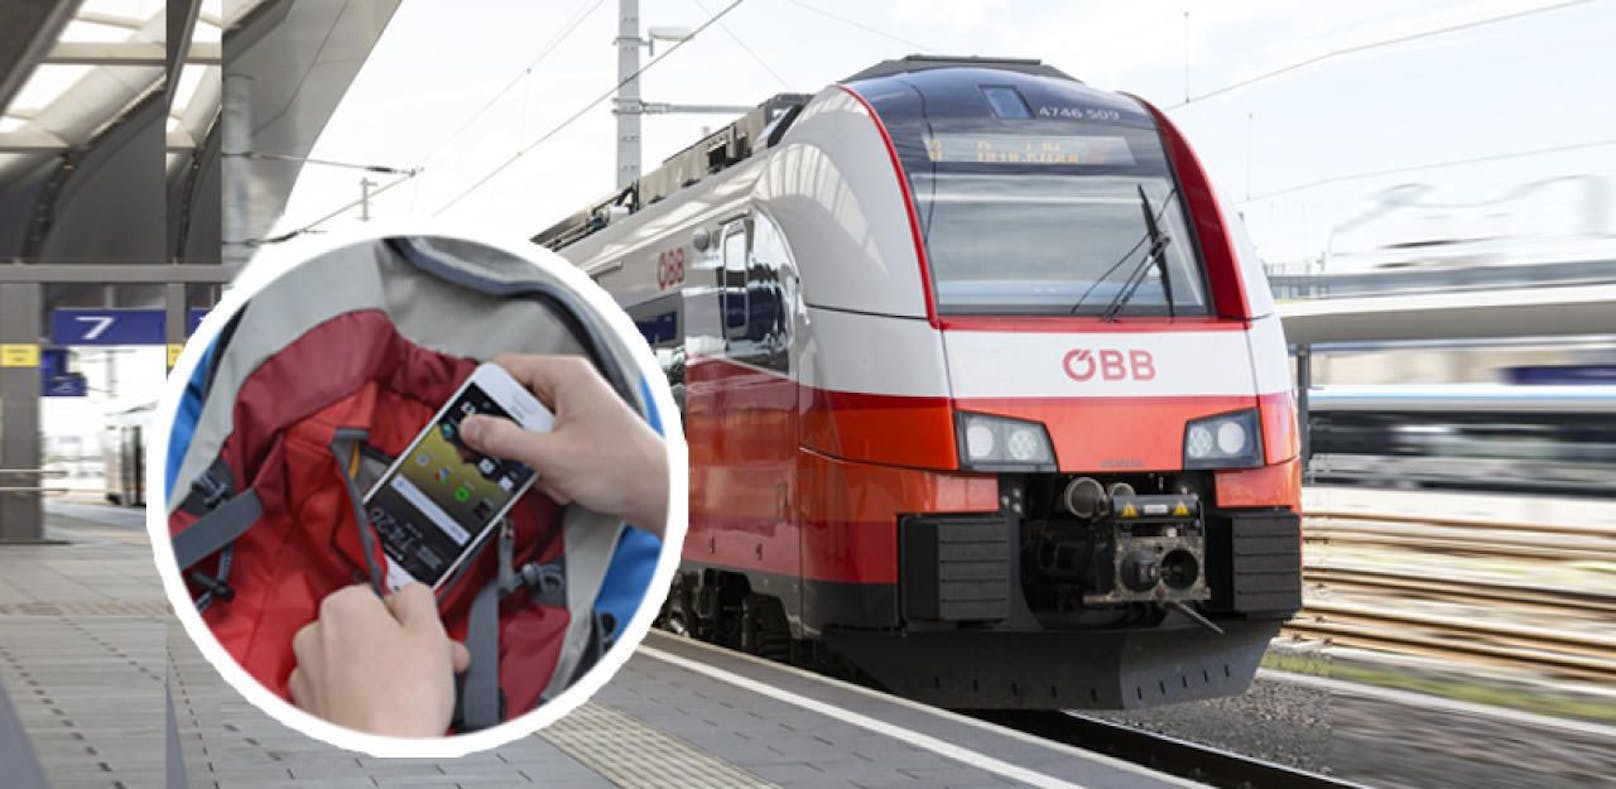 Ein 27-jähriger Rumäne soll einer 27-Jährigen während der Zugfahrt aus dem Rucksack das Handy und 100 Euro gestohlen haben.